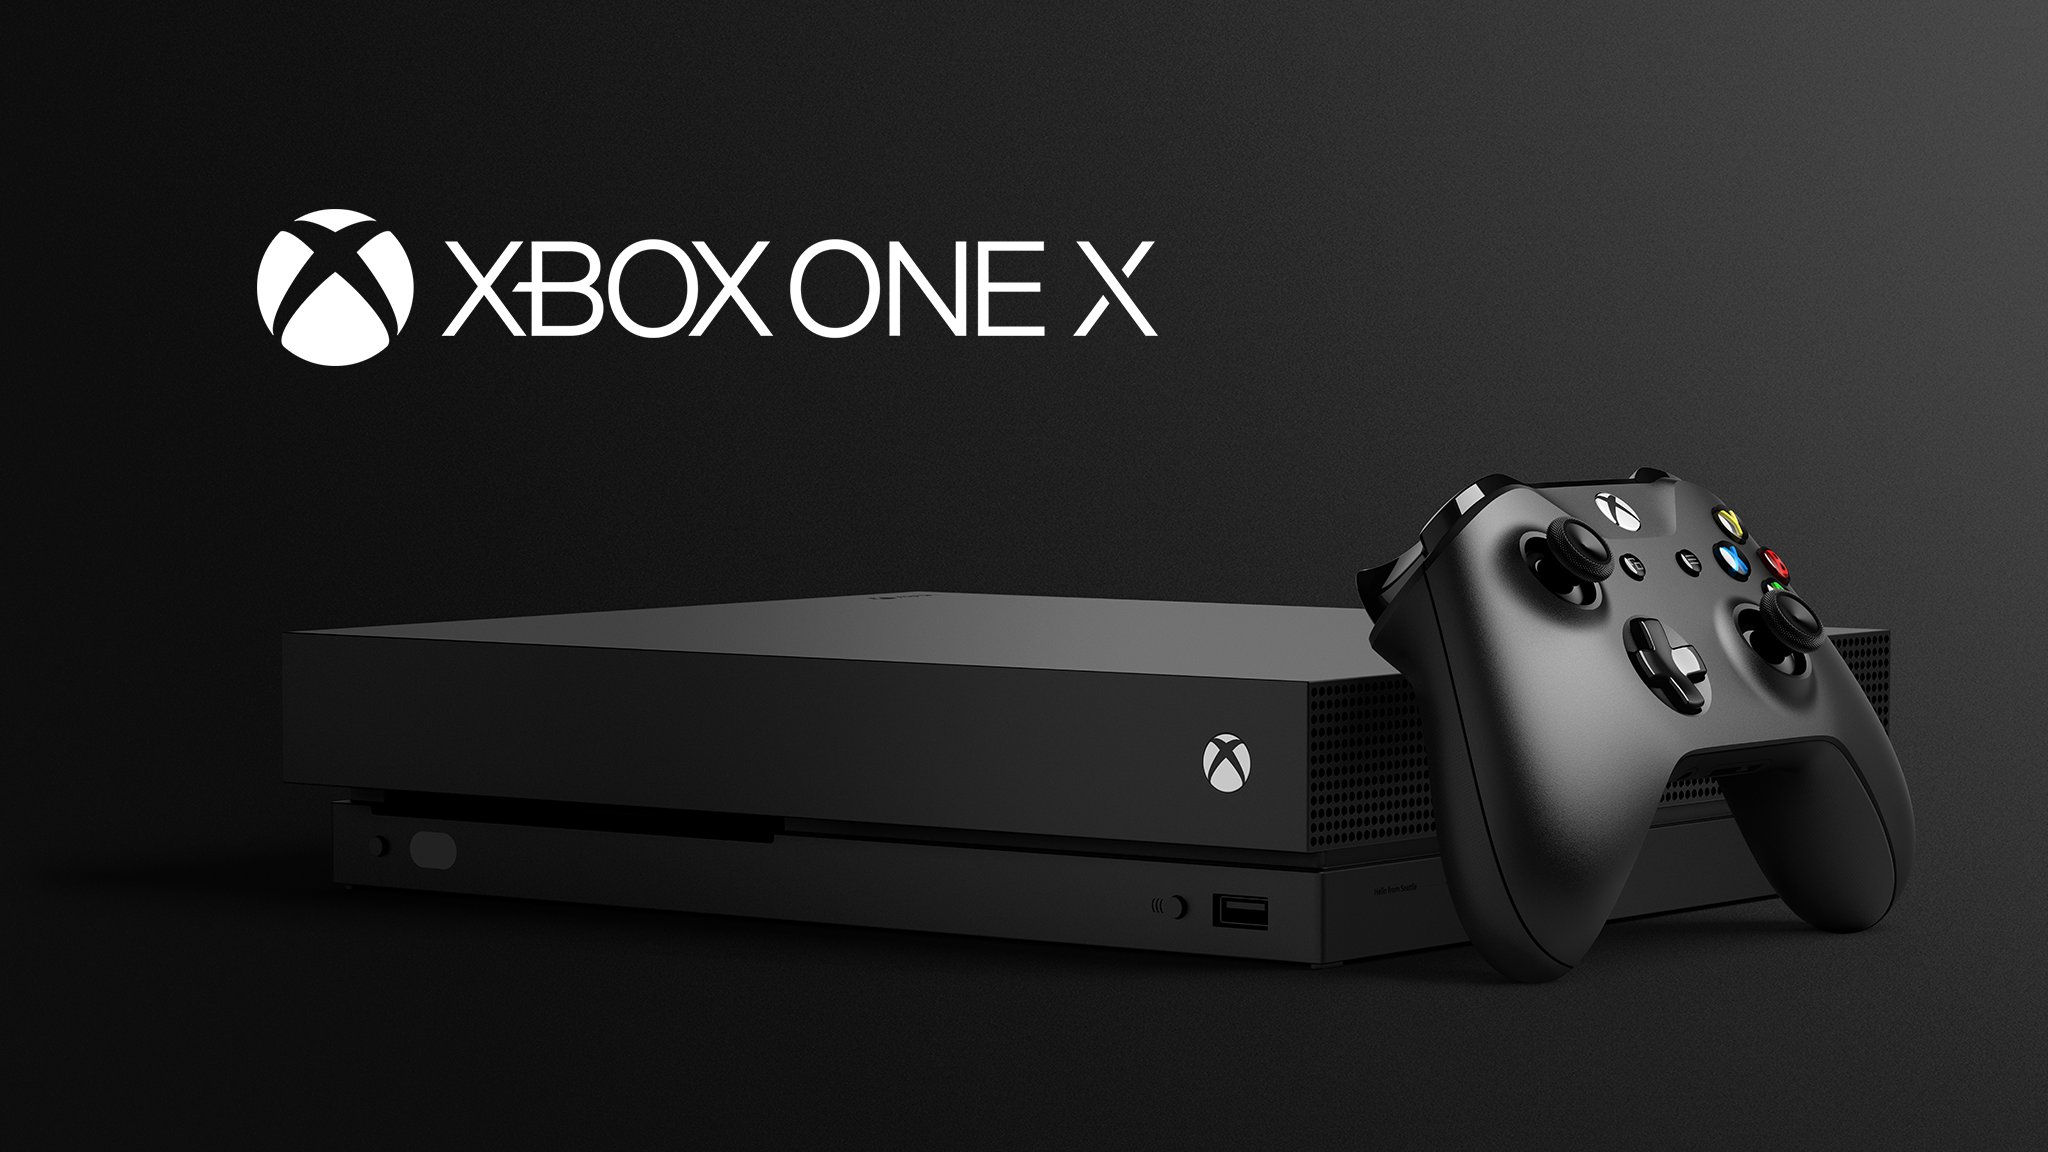 Come girano i giochi 360 su Xbox One X? Digital Foundry risponde